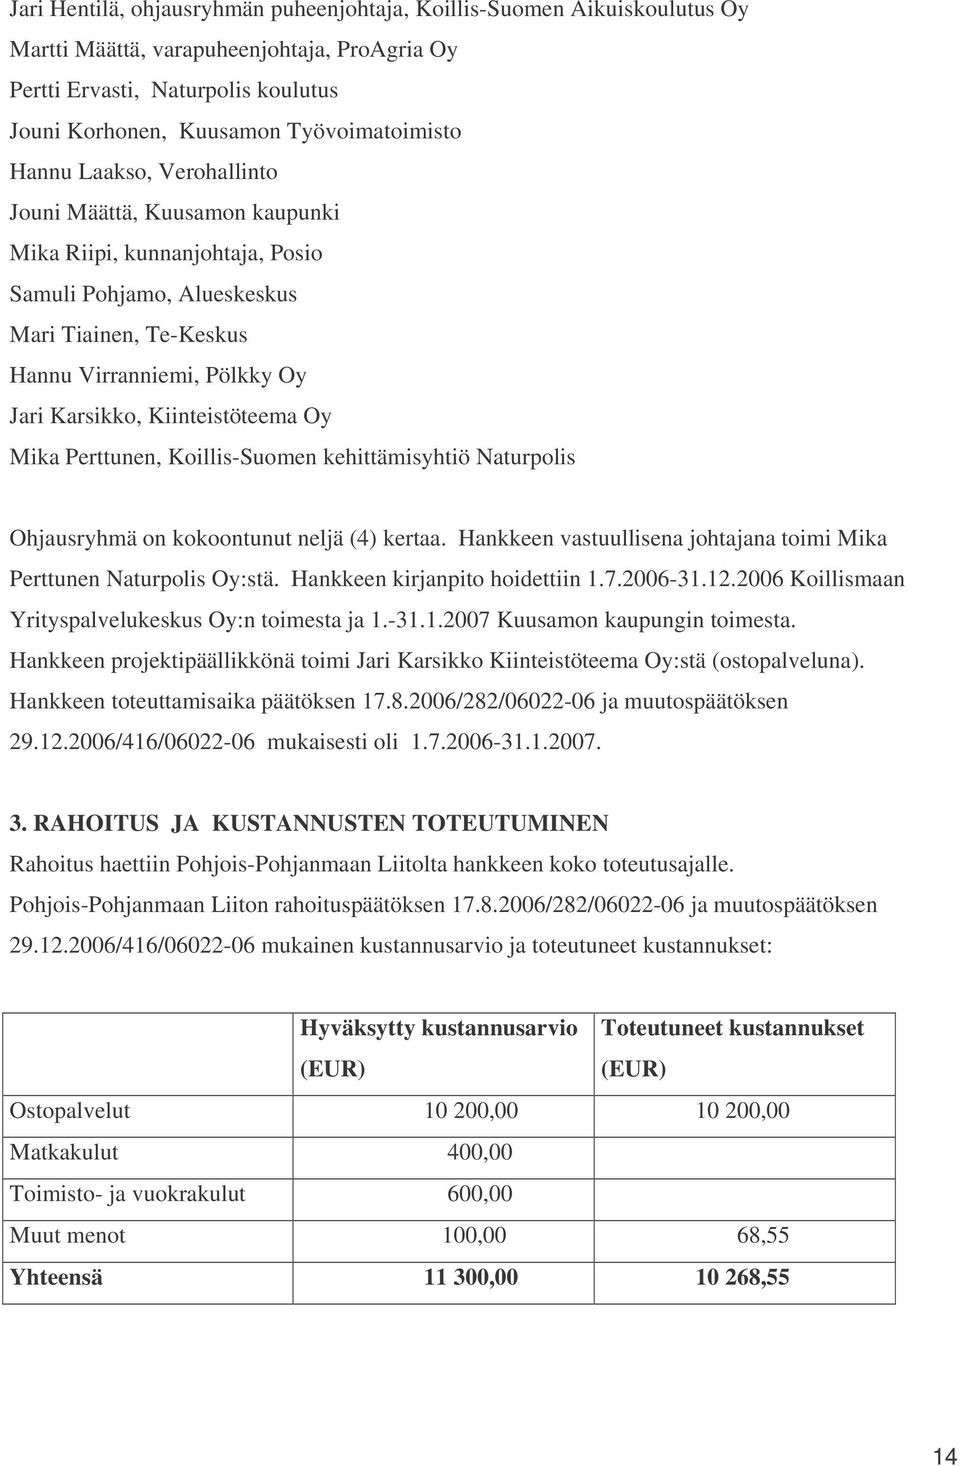 Kiinteistöteema Oy Mika Perttunen, Koillis-Suomen kehittämisyhtiö Naturpolis Ohjausryhmä on kokoontunut neljä (4) kertaa. Hankkeen vastuullisena johtajana toimi Mika Perttunen Naturpolis Oy:stä.